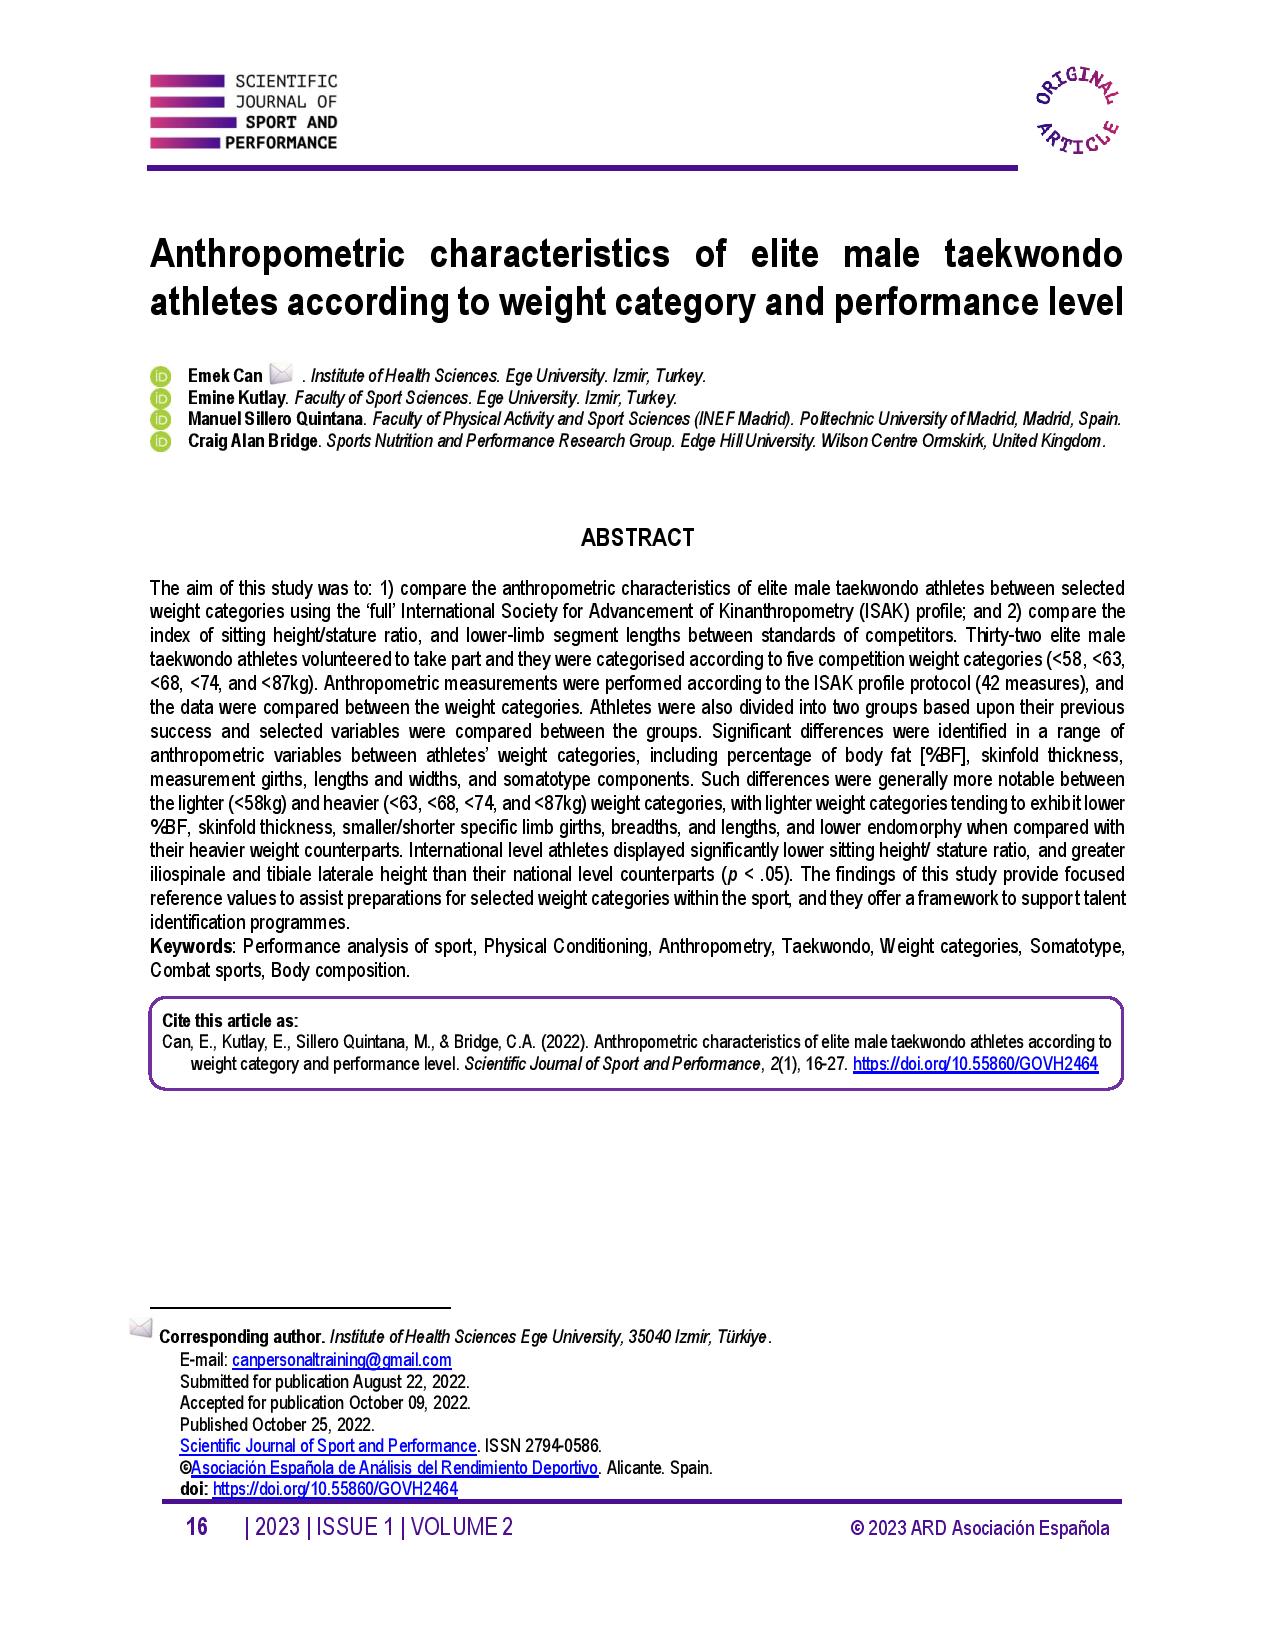 Anthropometric characteristics of elite male taekwondo athletes according to weight category and performance level